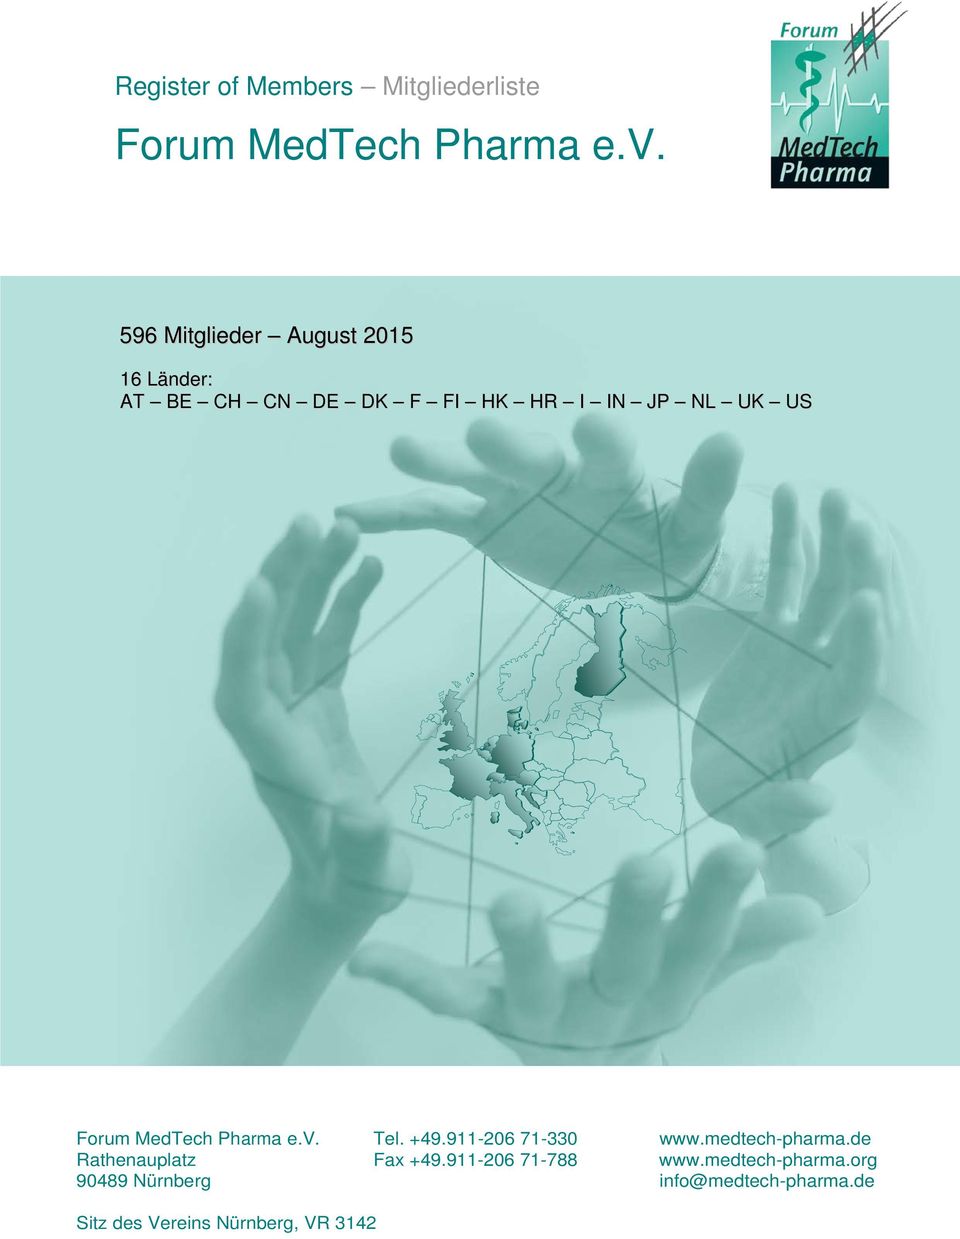 Forum MedTech Pharma e.v. Tel. +49.911-206 71-330 www.medtech-pharma.